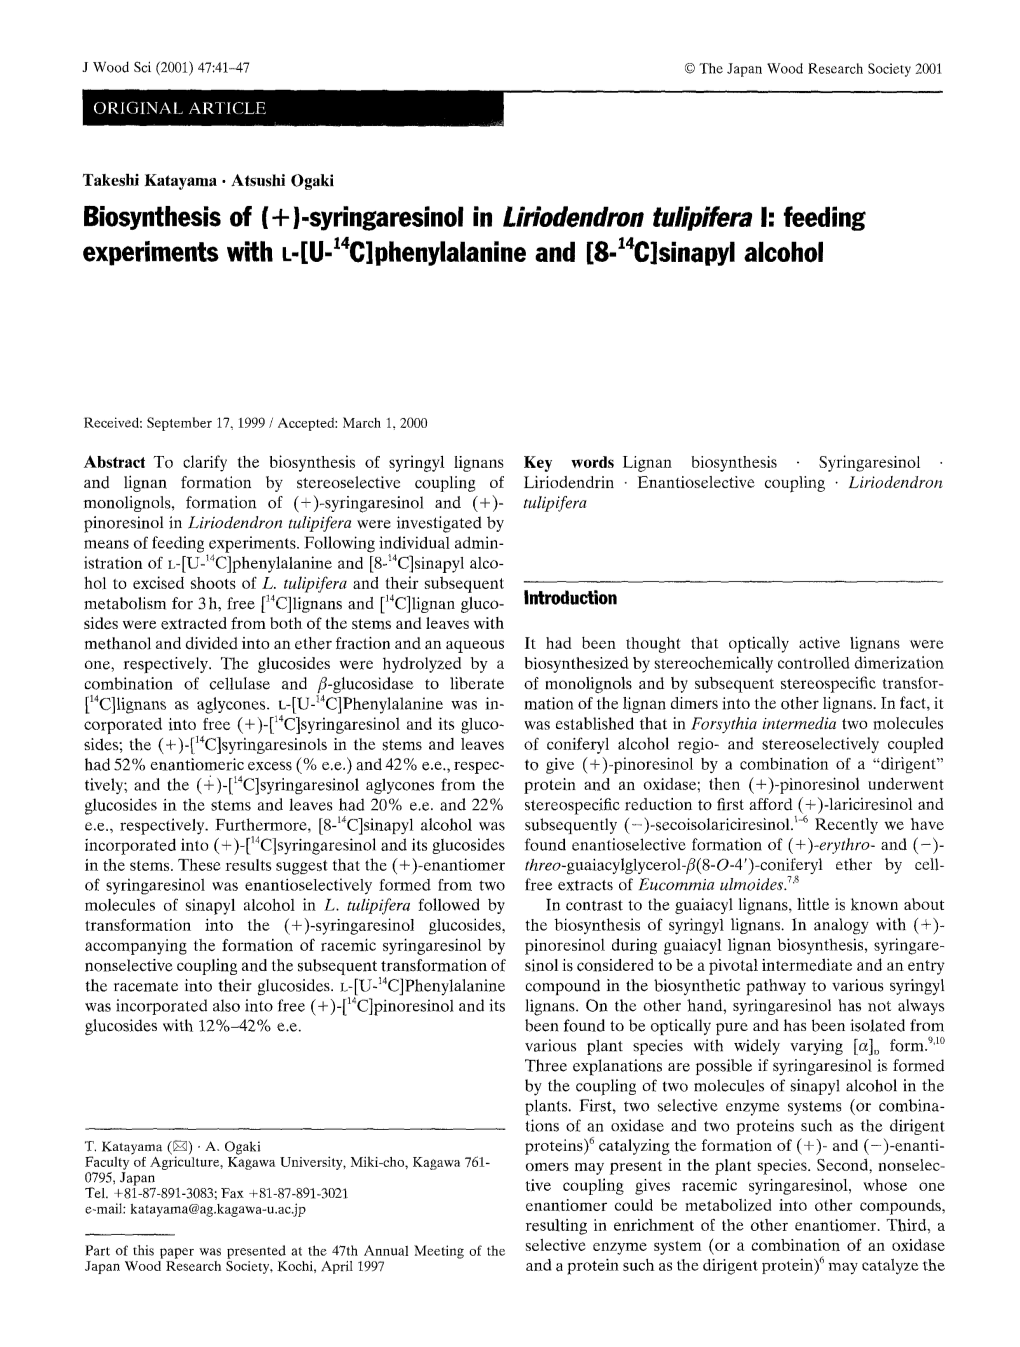 (+)-Syringaresinol in Liriodendron Tulipifera I: Feeding Experiments with L-[U- 4C]Phenylalanine and [8-14C]Sinapyl Alcohol